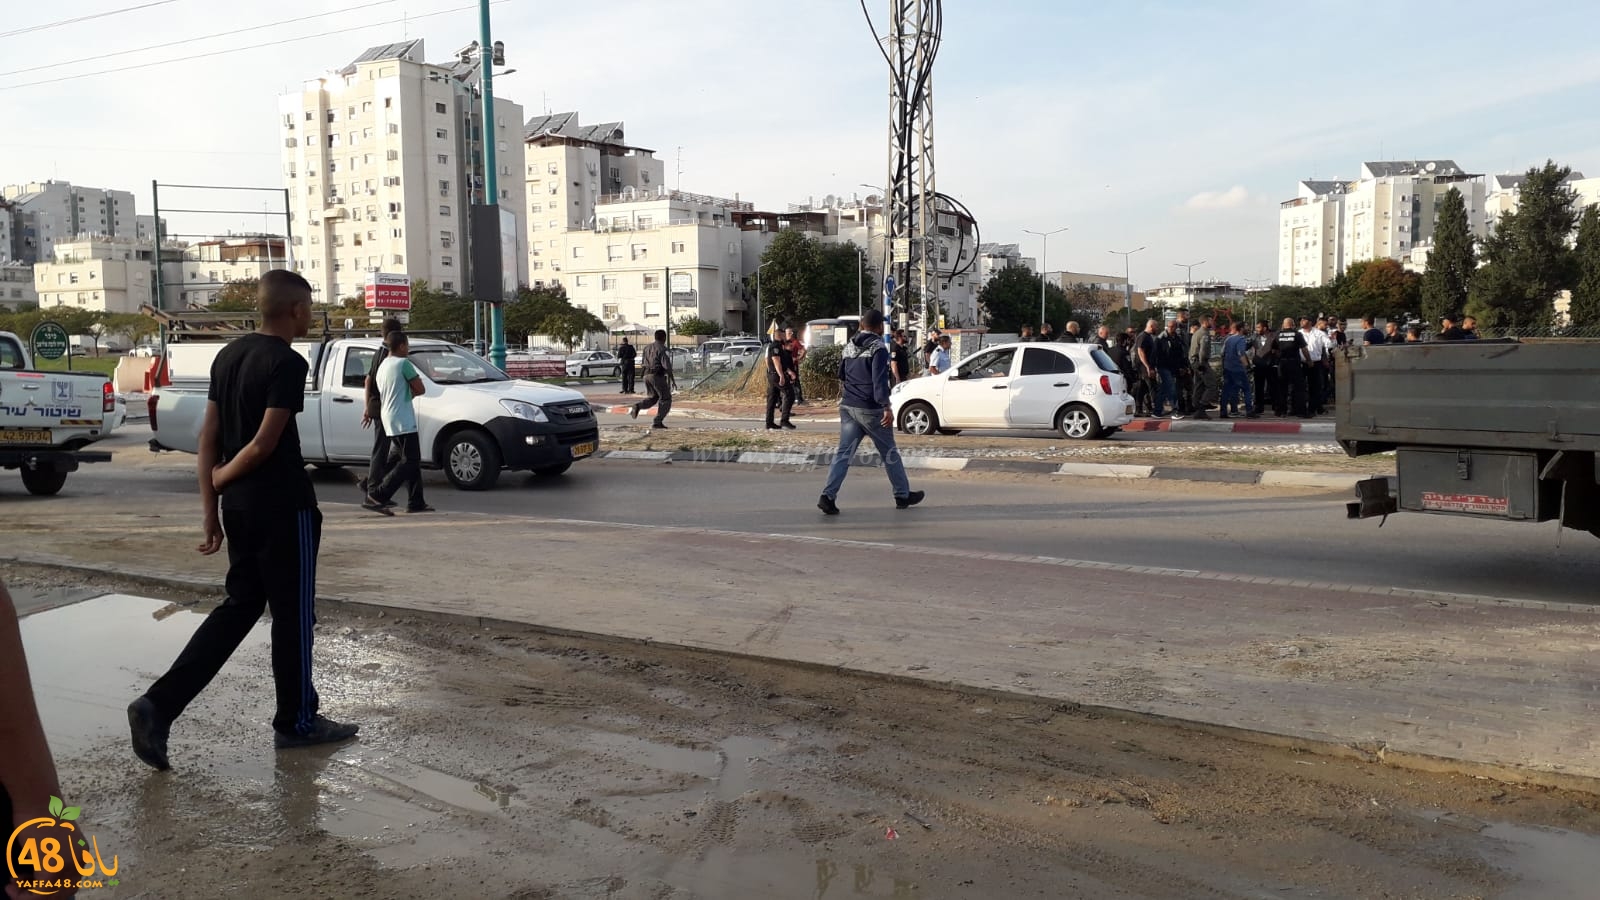 فيديو: تظاهرة في اللد احتجاجاً على هدم البيوت واعتقال 11 متظاهراً